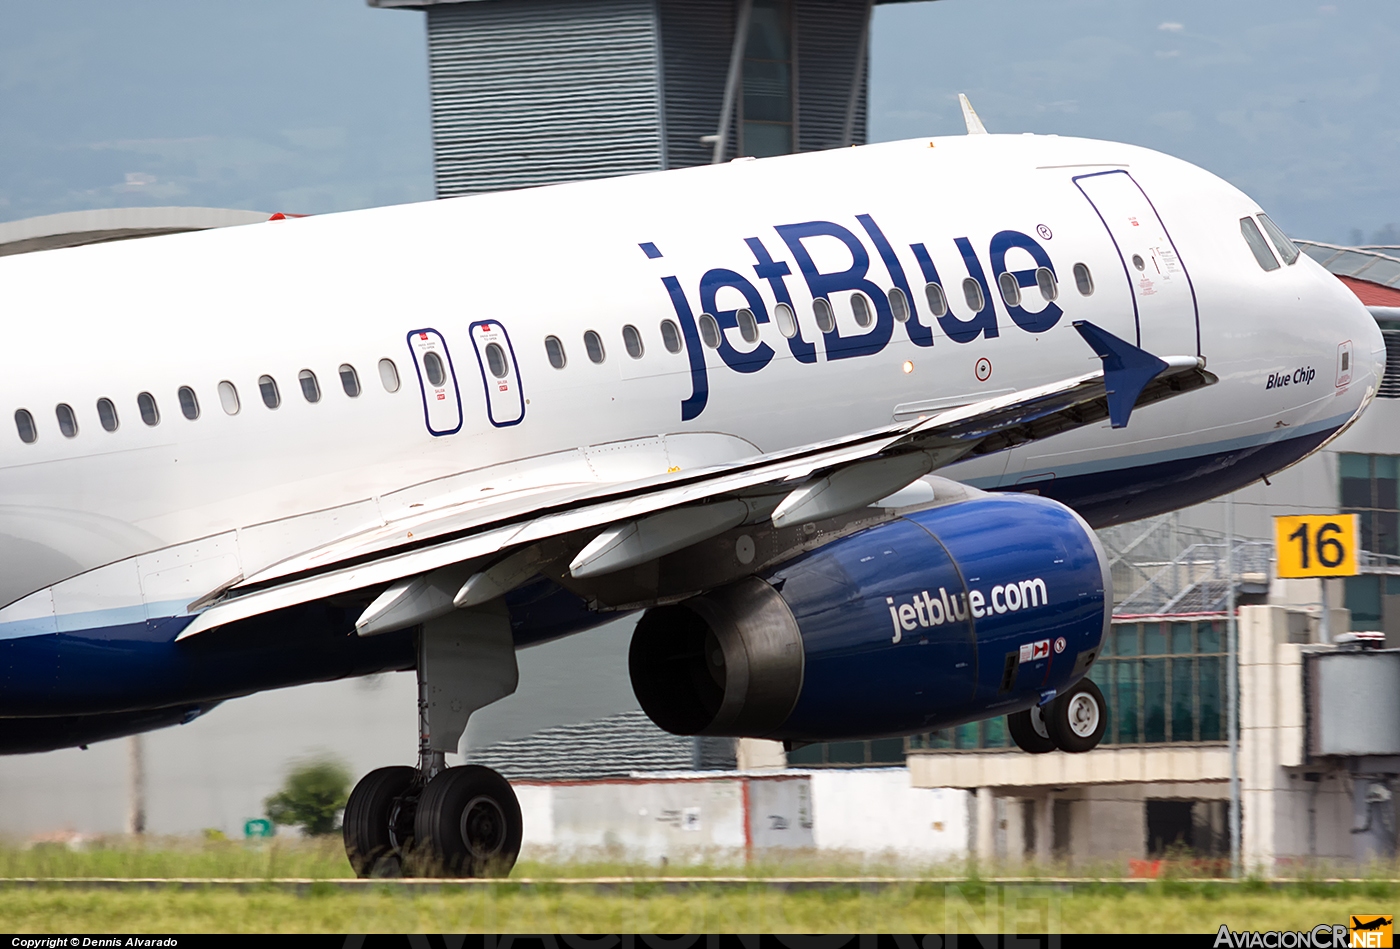 N563JB - Airbus A320-232 - Jet Blue